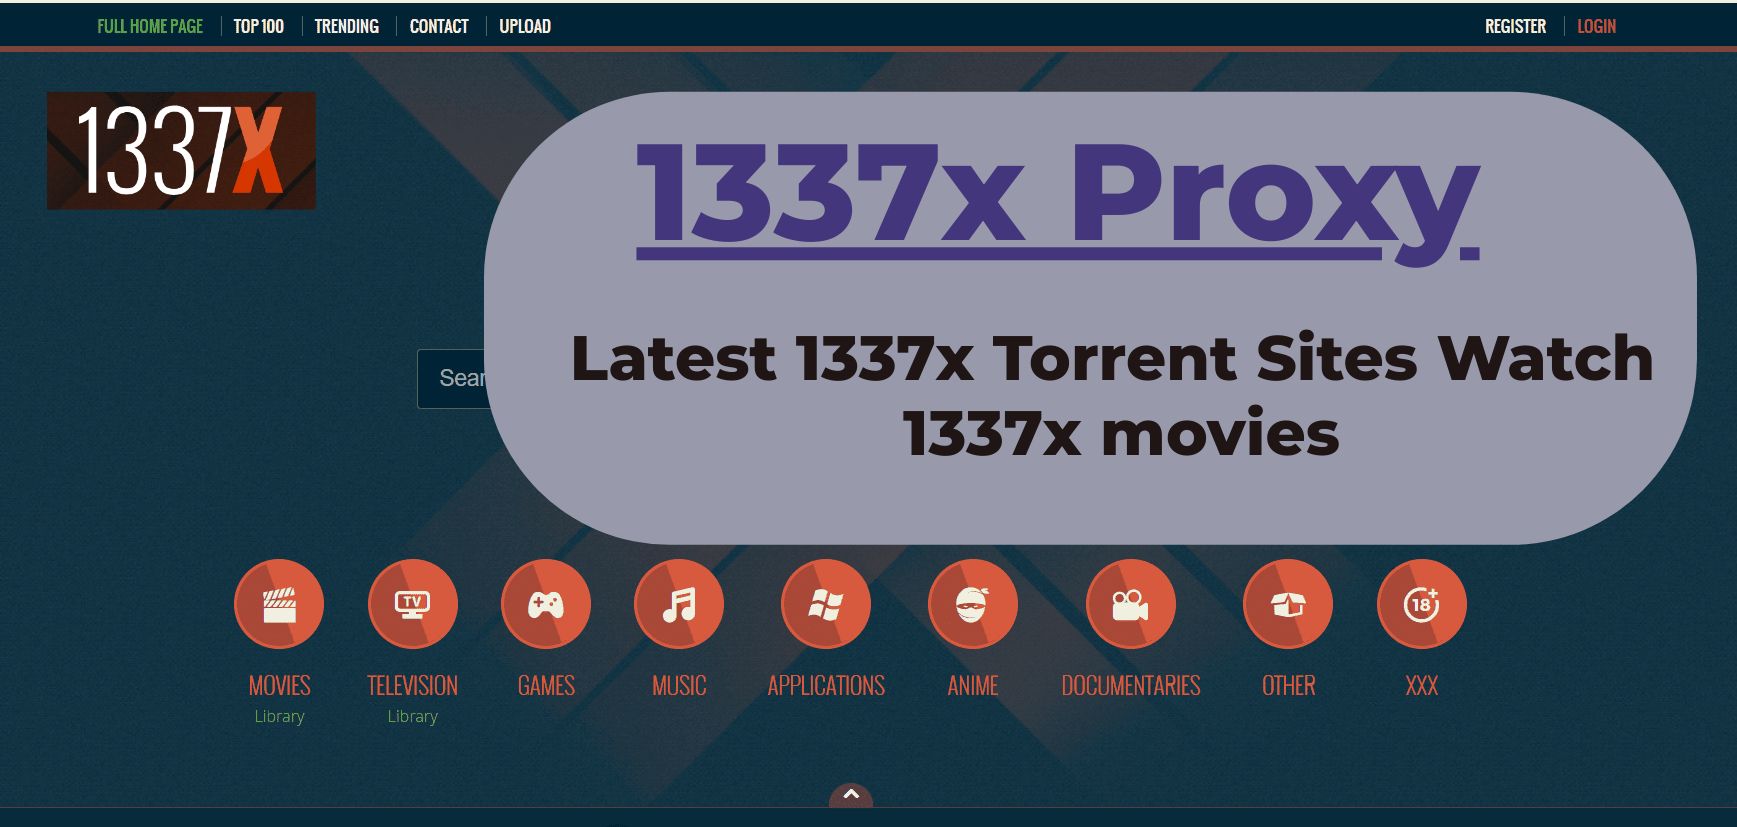 1337x Proxy : 1337x Torrent Sites Watch Latest 1337x movies